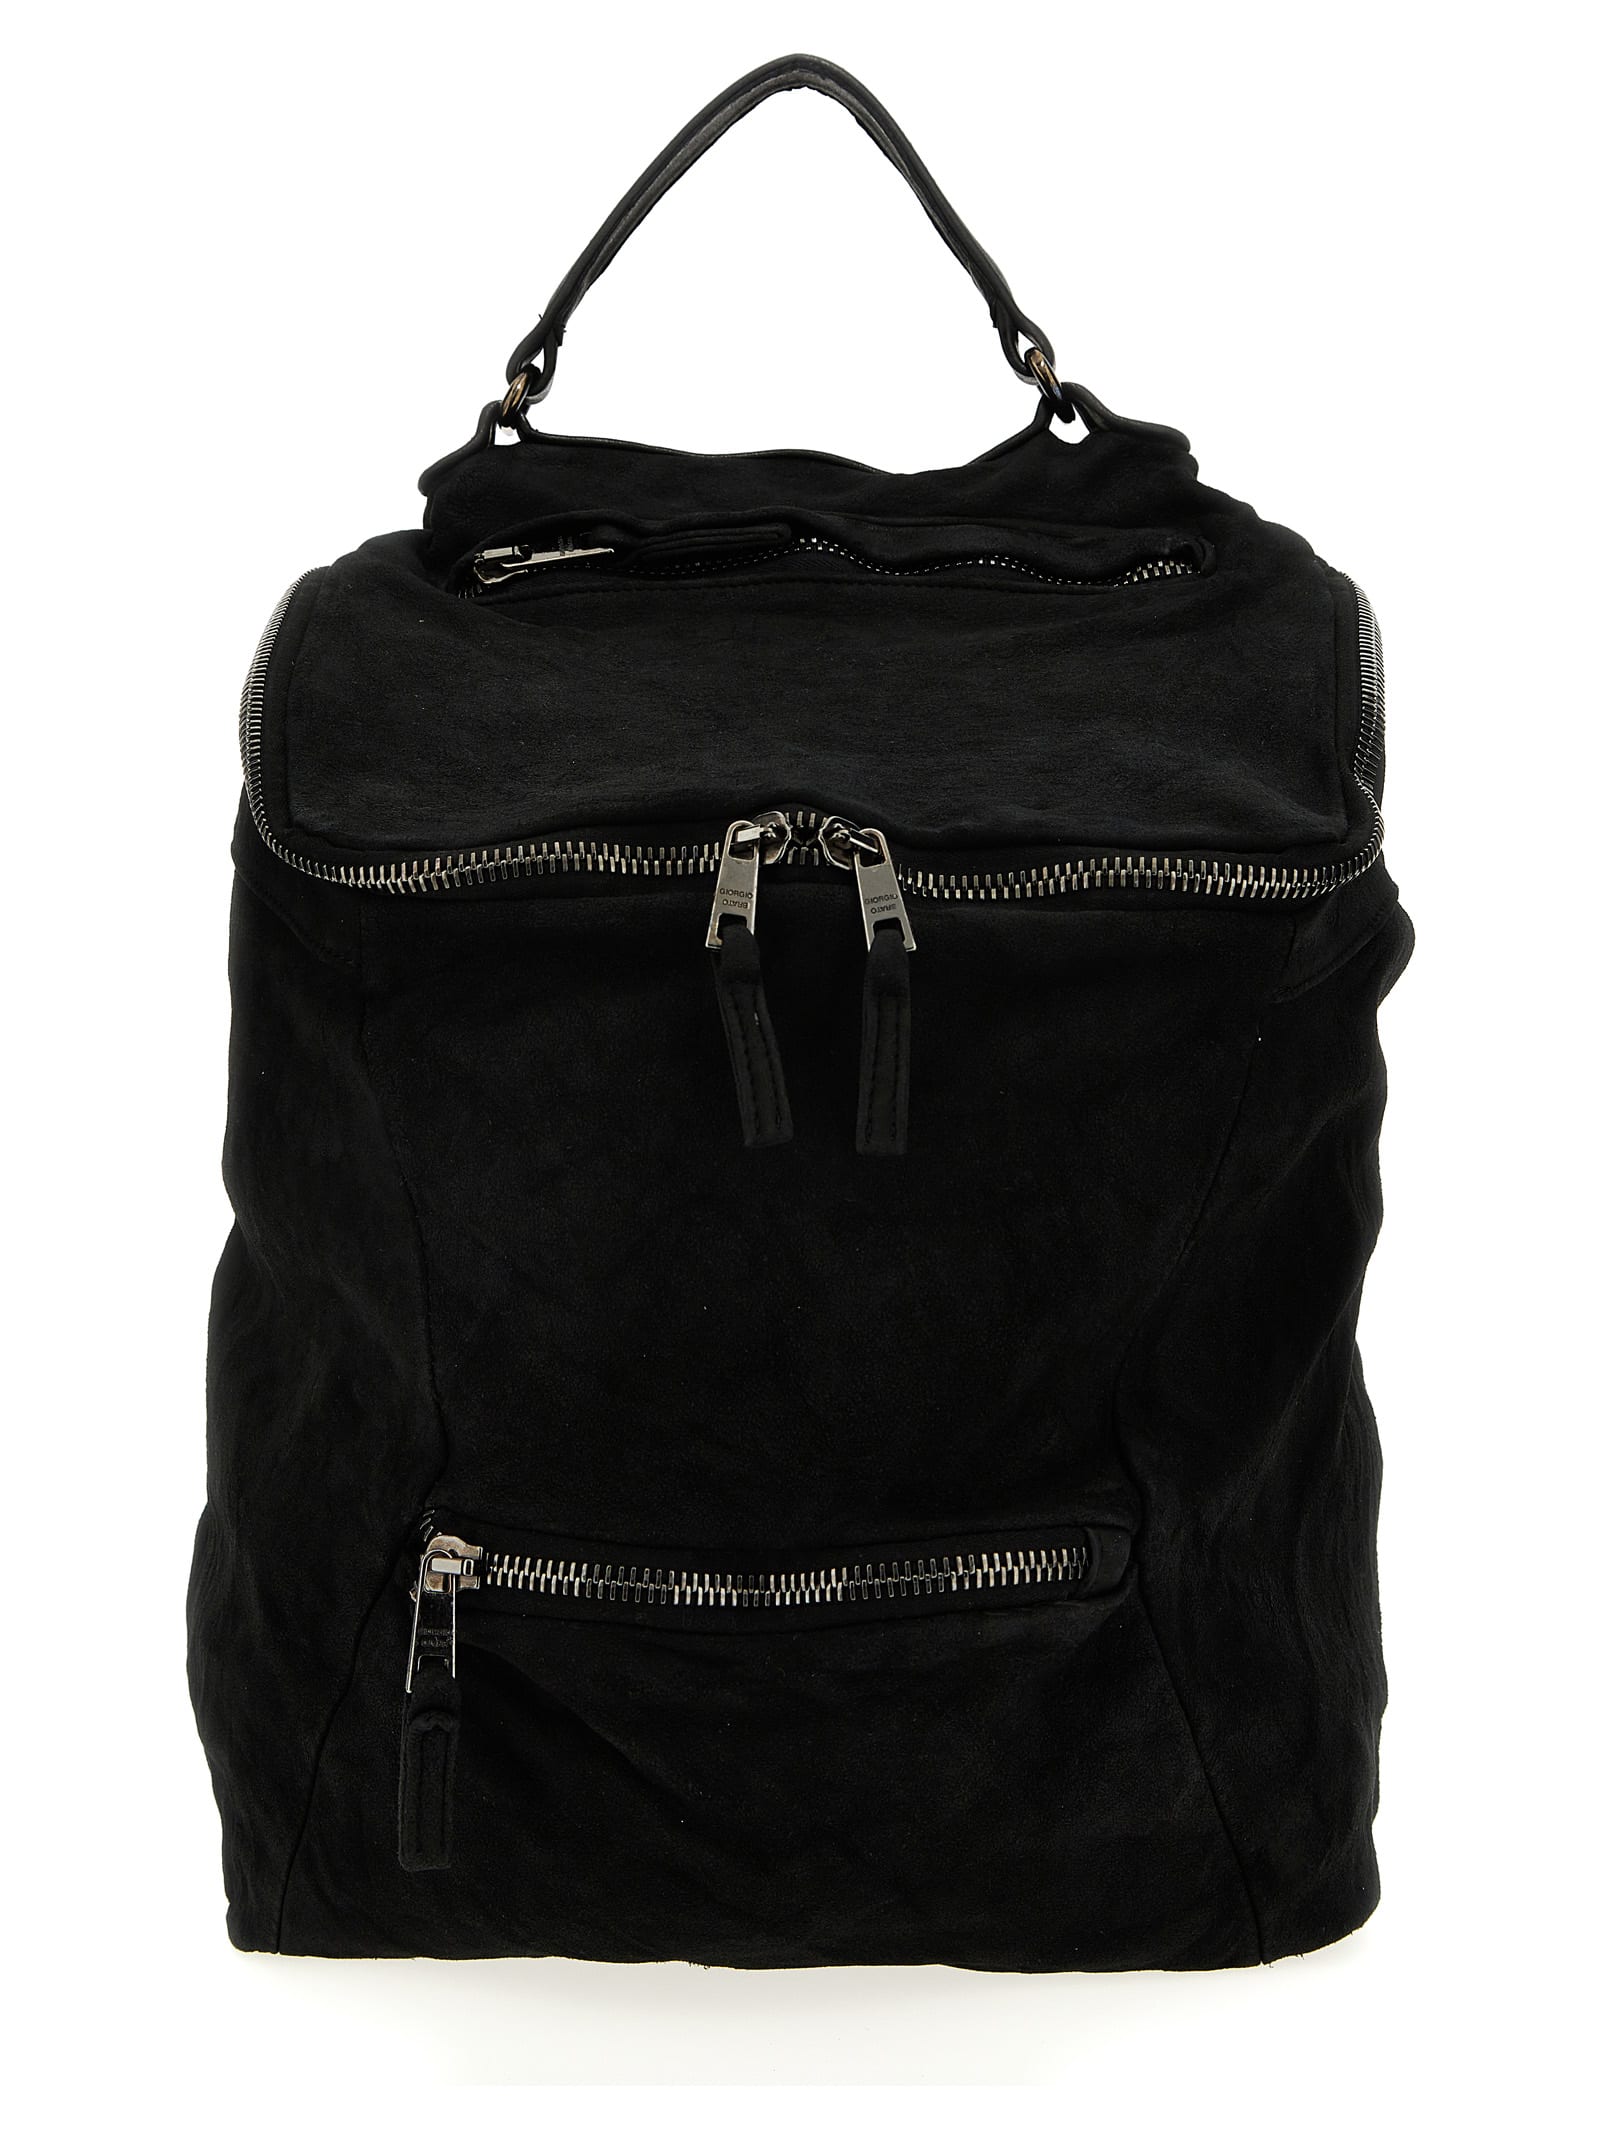 Giorgio Brato Leather Suede Backpack